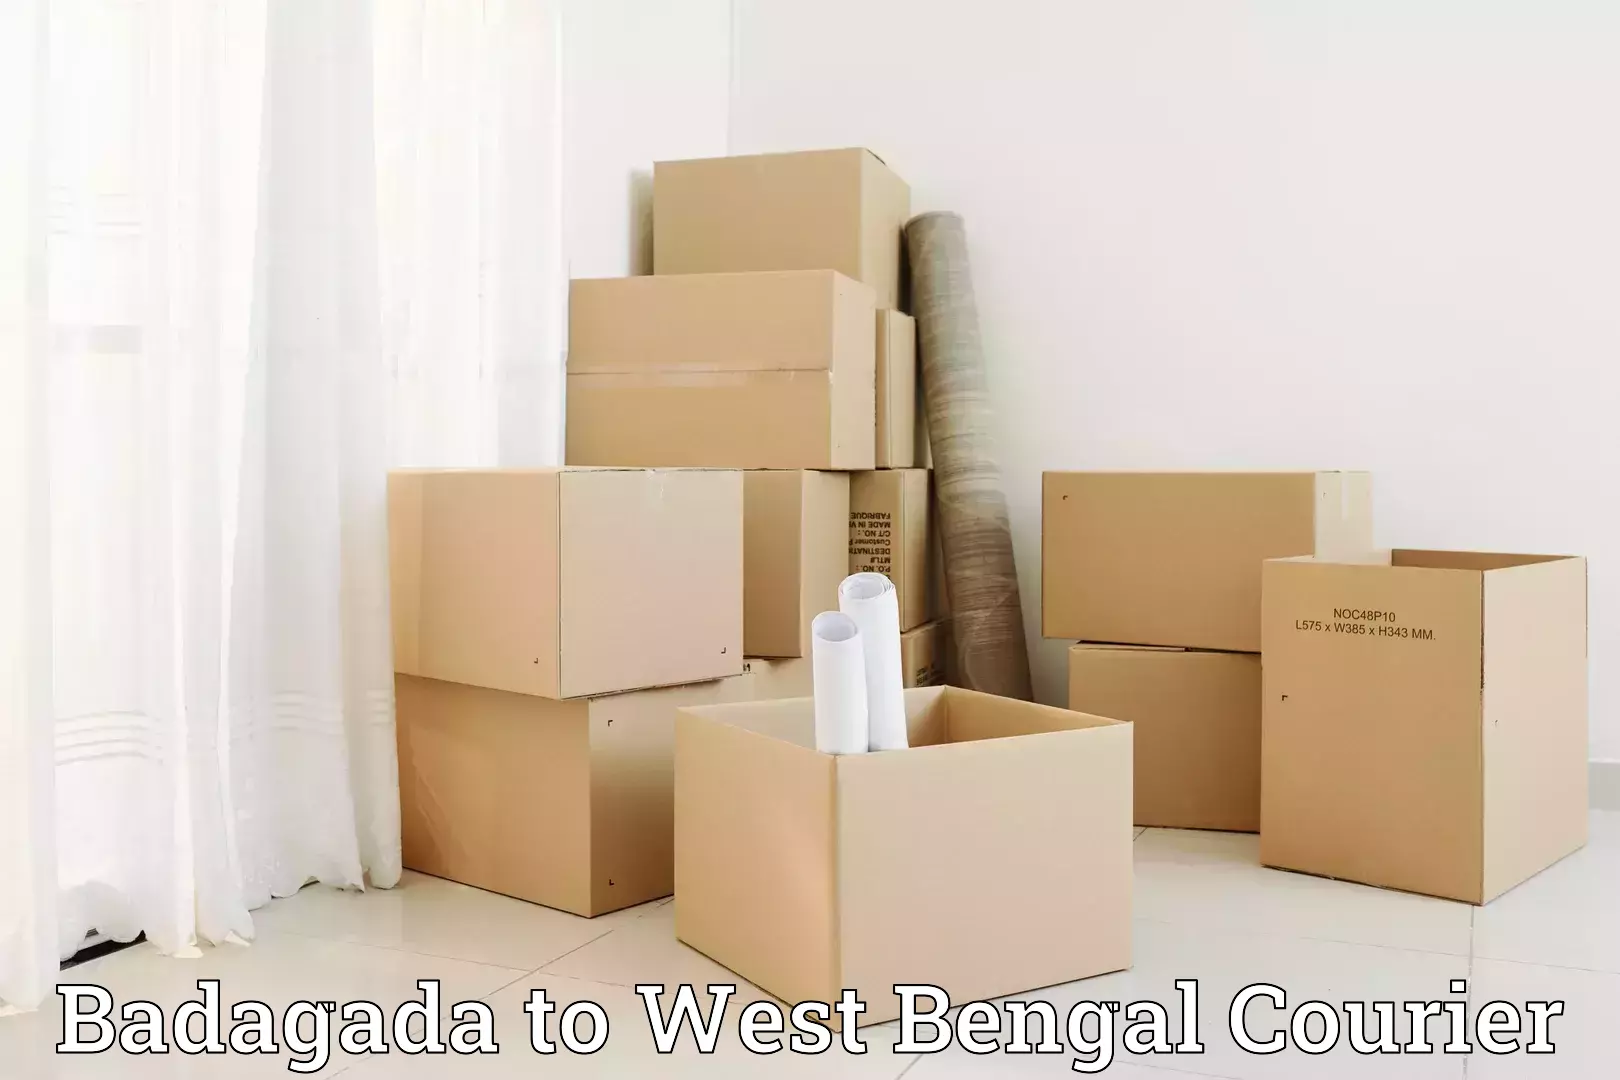 Full-service relocation Badagada to Egra